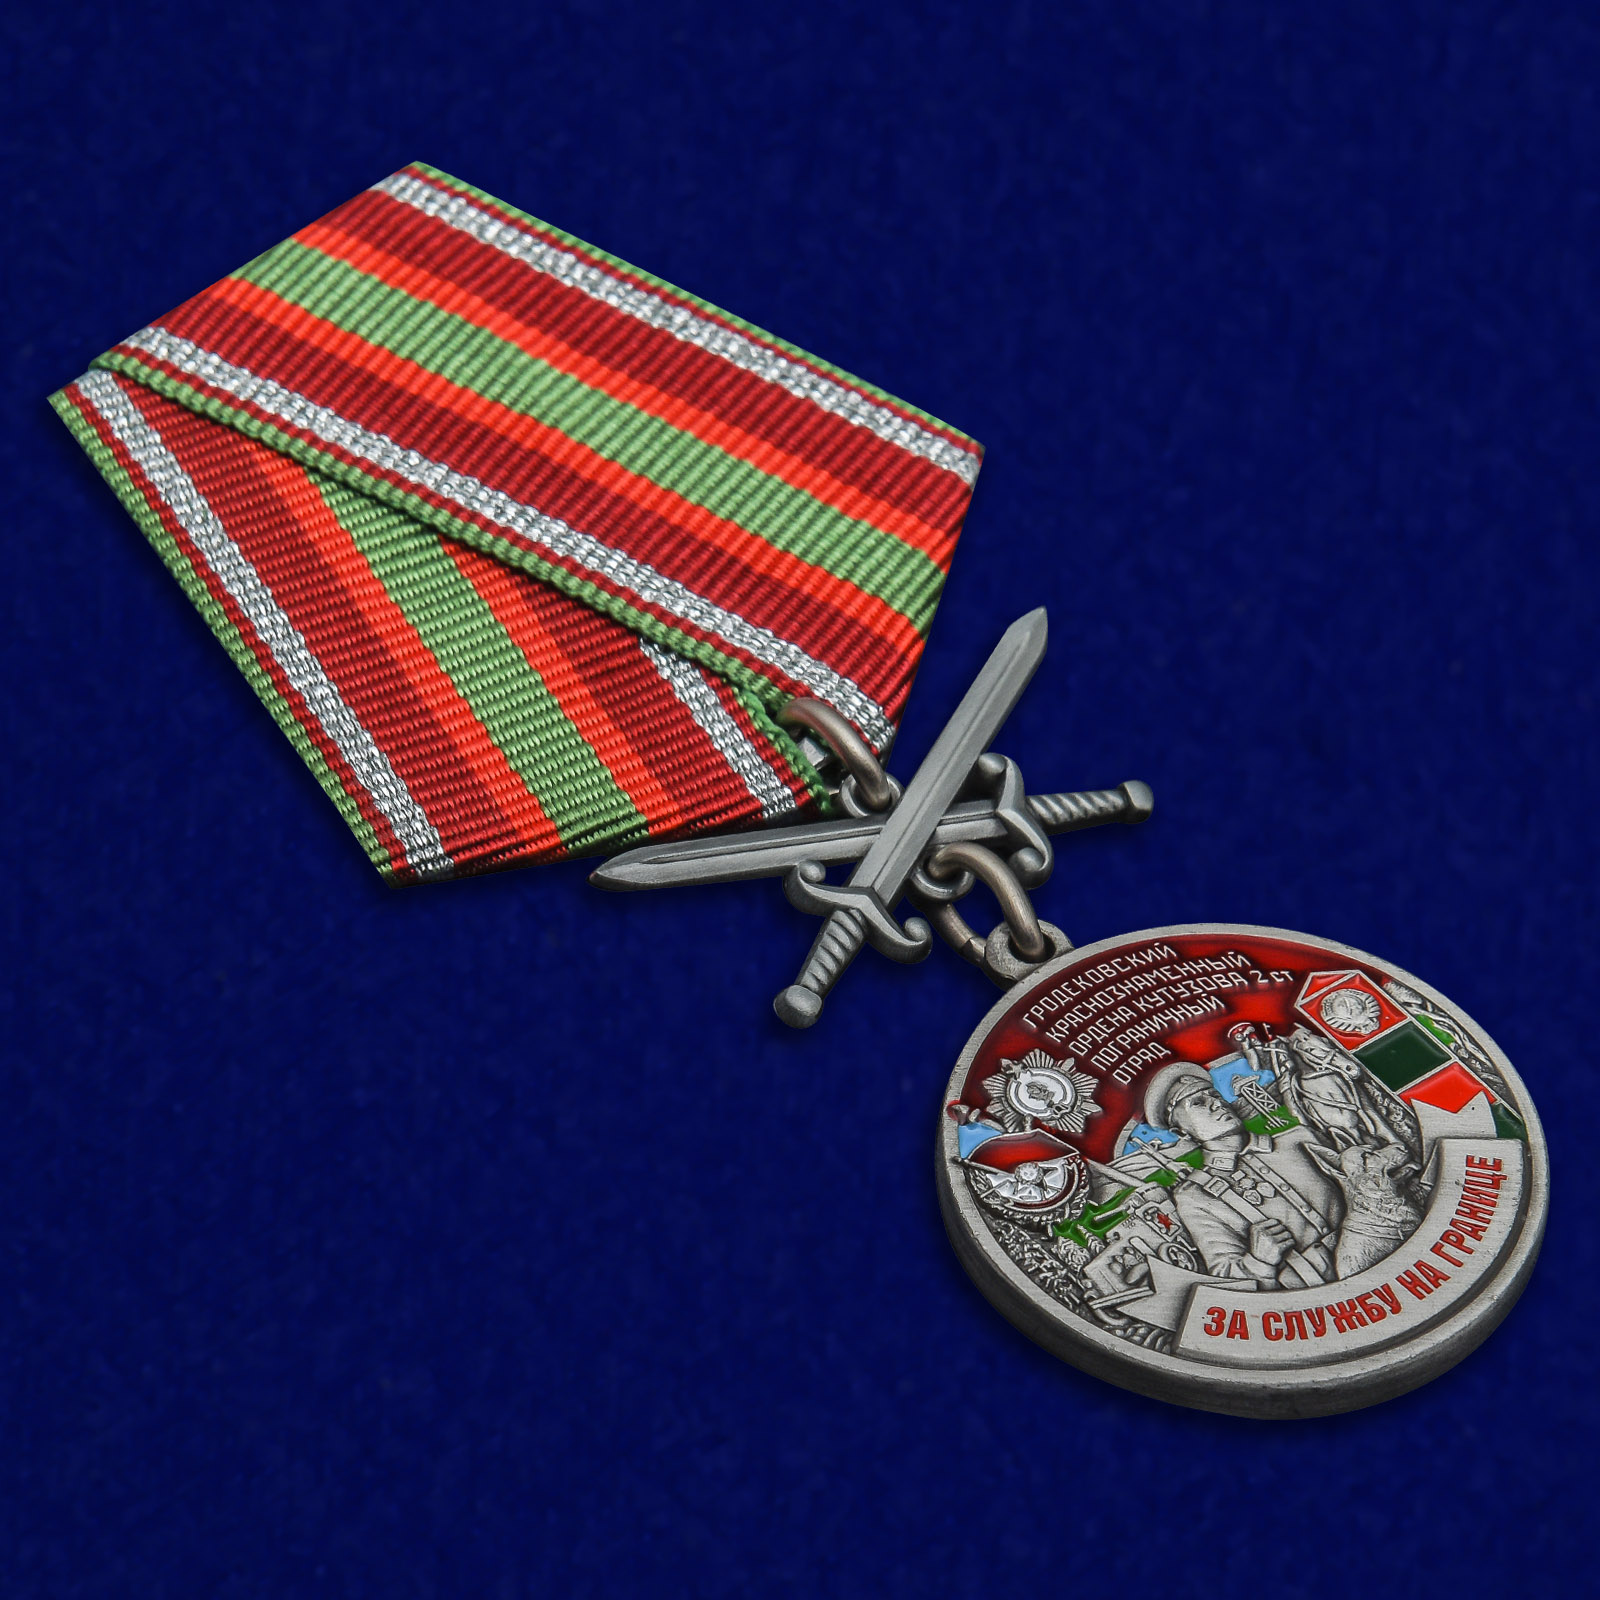 Купить медаль "За службу на границе" (Гродековский ПогО) 